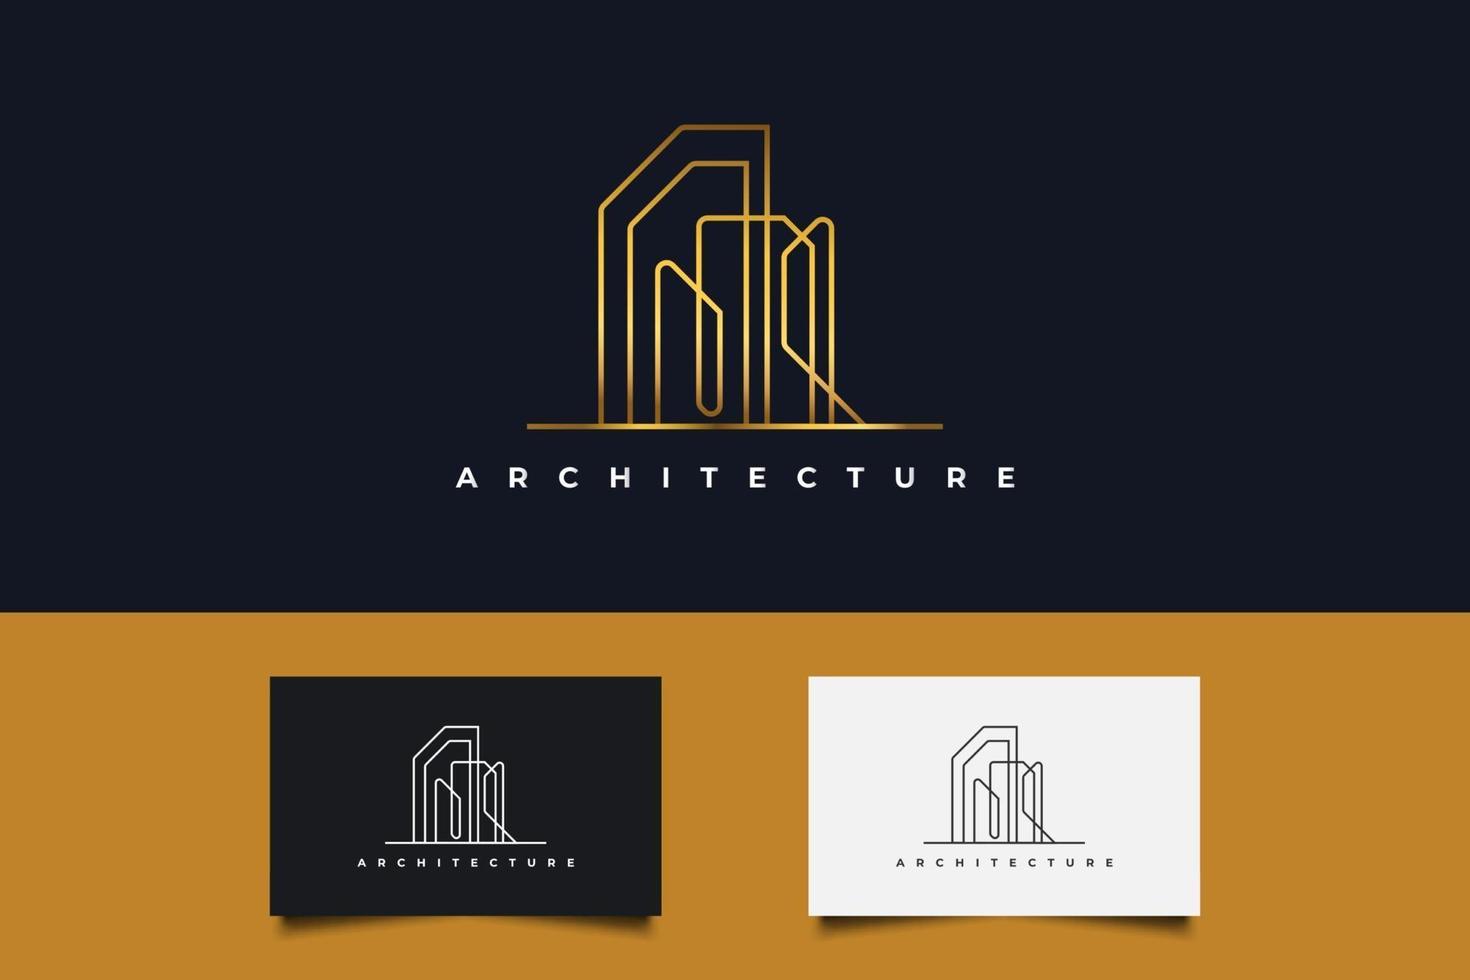 logotipo da imobiliária em gradiente dourado com estilo de linha vetor